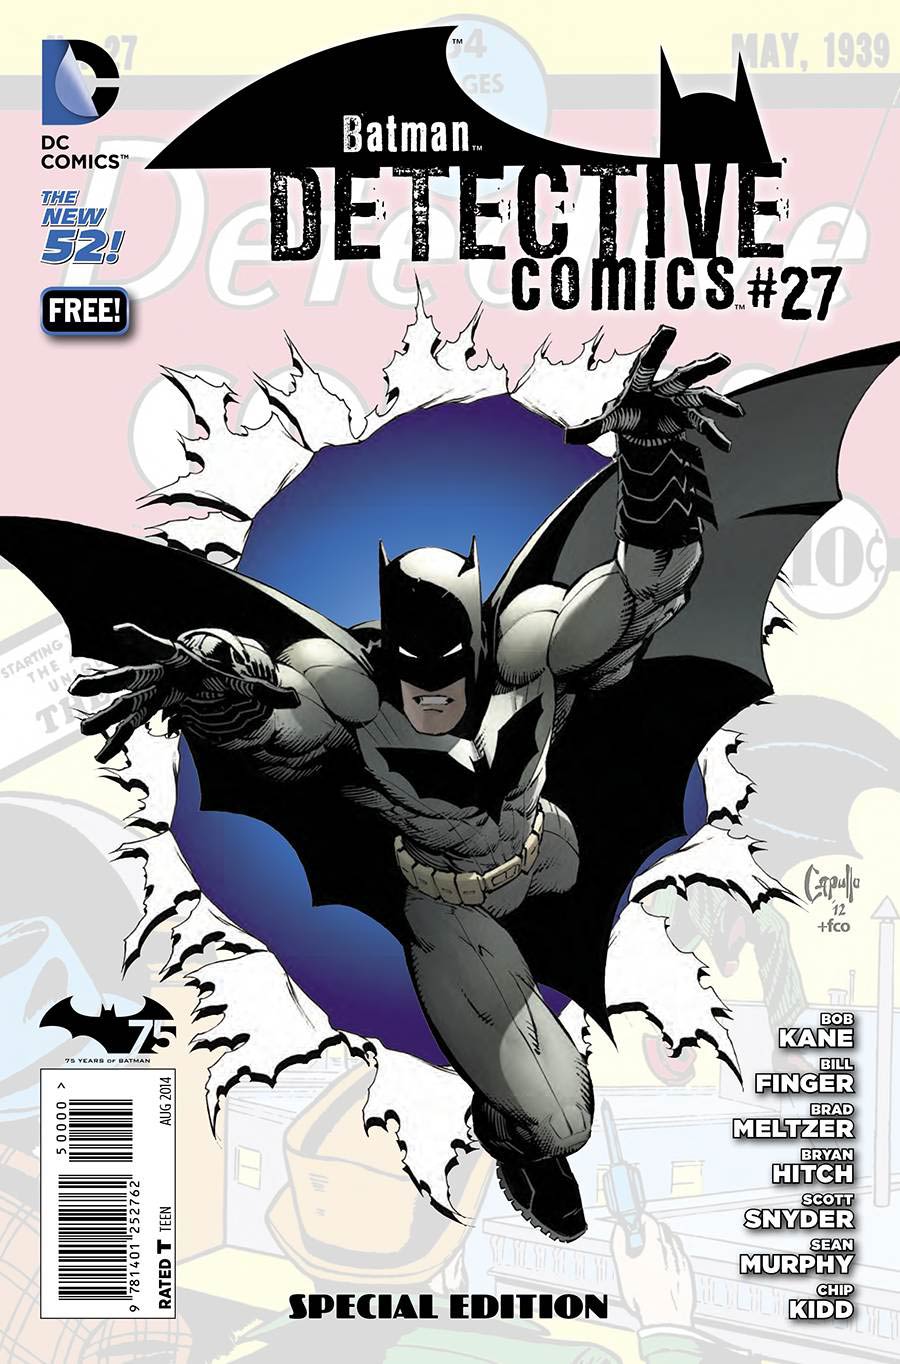 Detective Comics #27 Special Edition